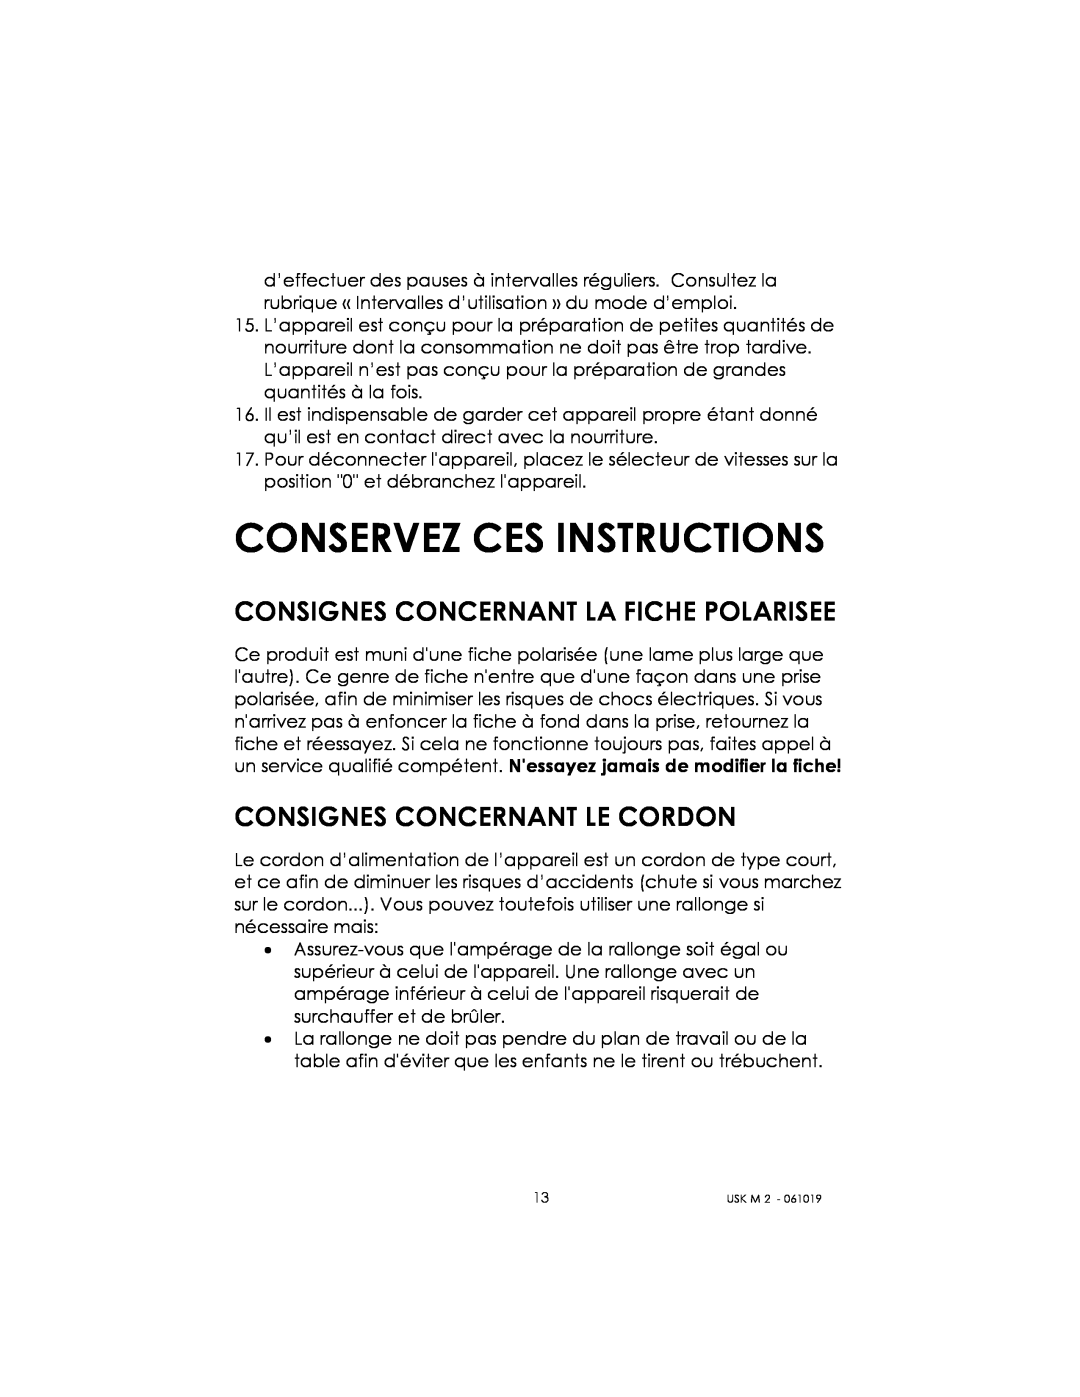 Kalorik USK M 2 manual Conservez Ces Instructions, Consignes Concernant La Fiche Polarisee, Consignes Concernant Le Cordon 